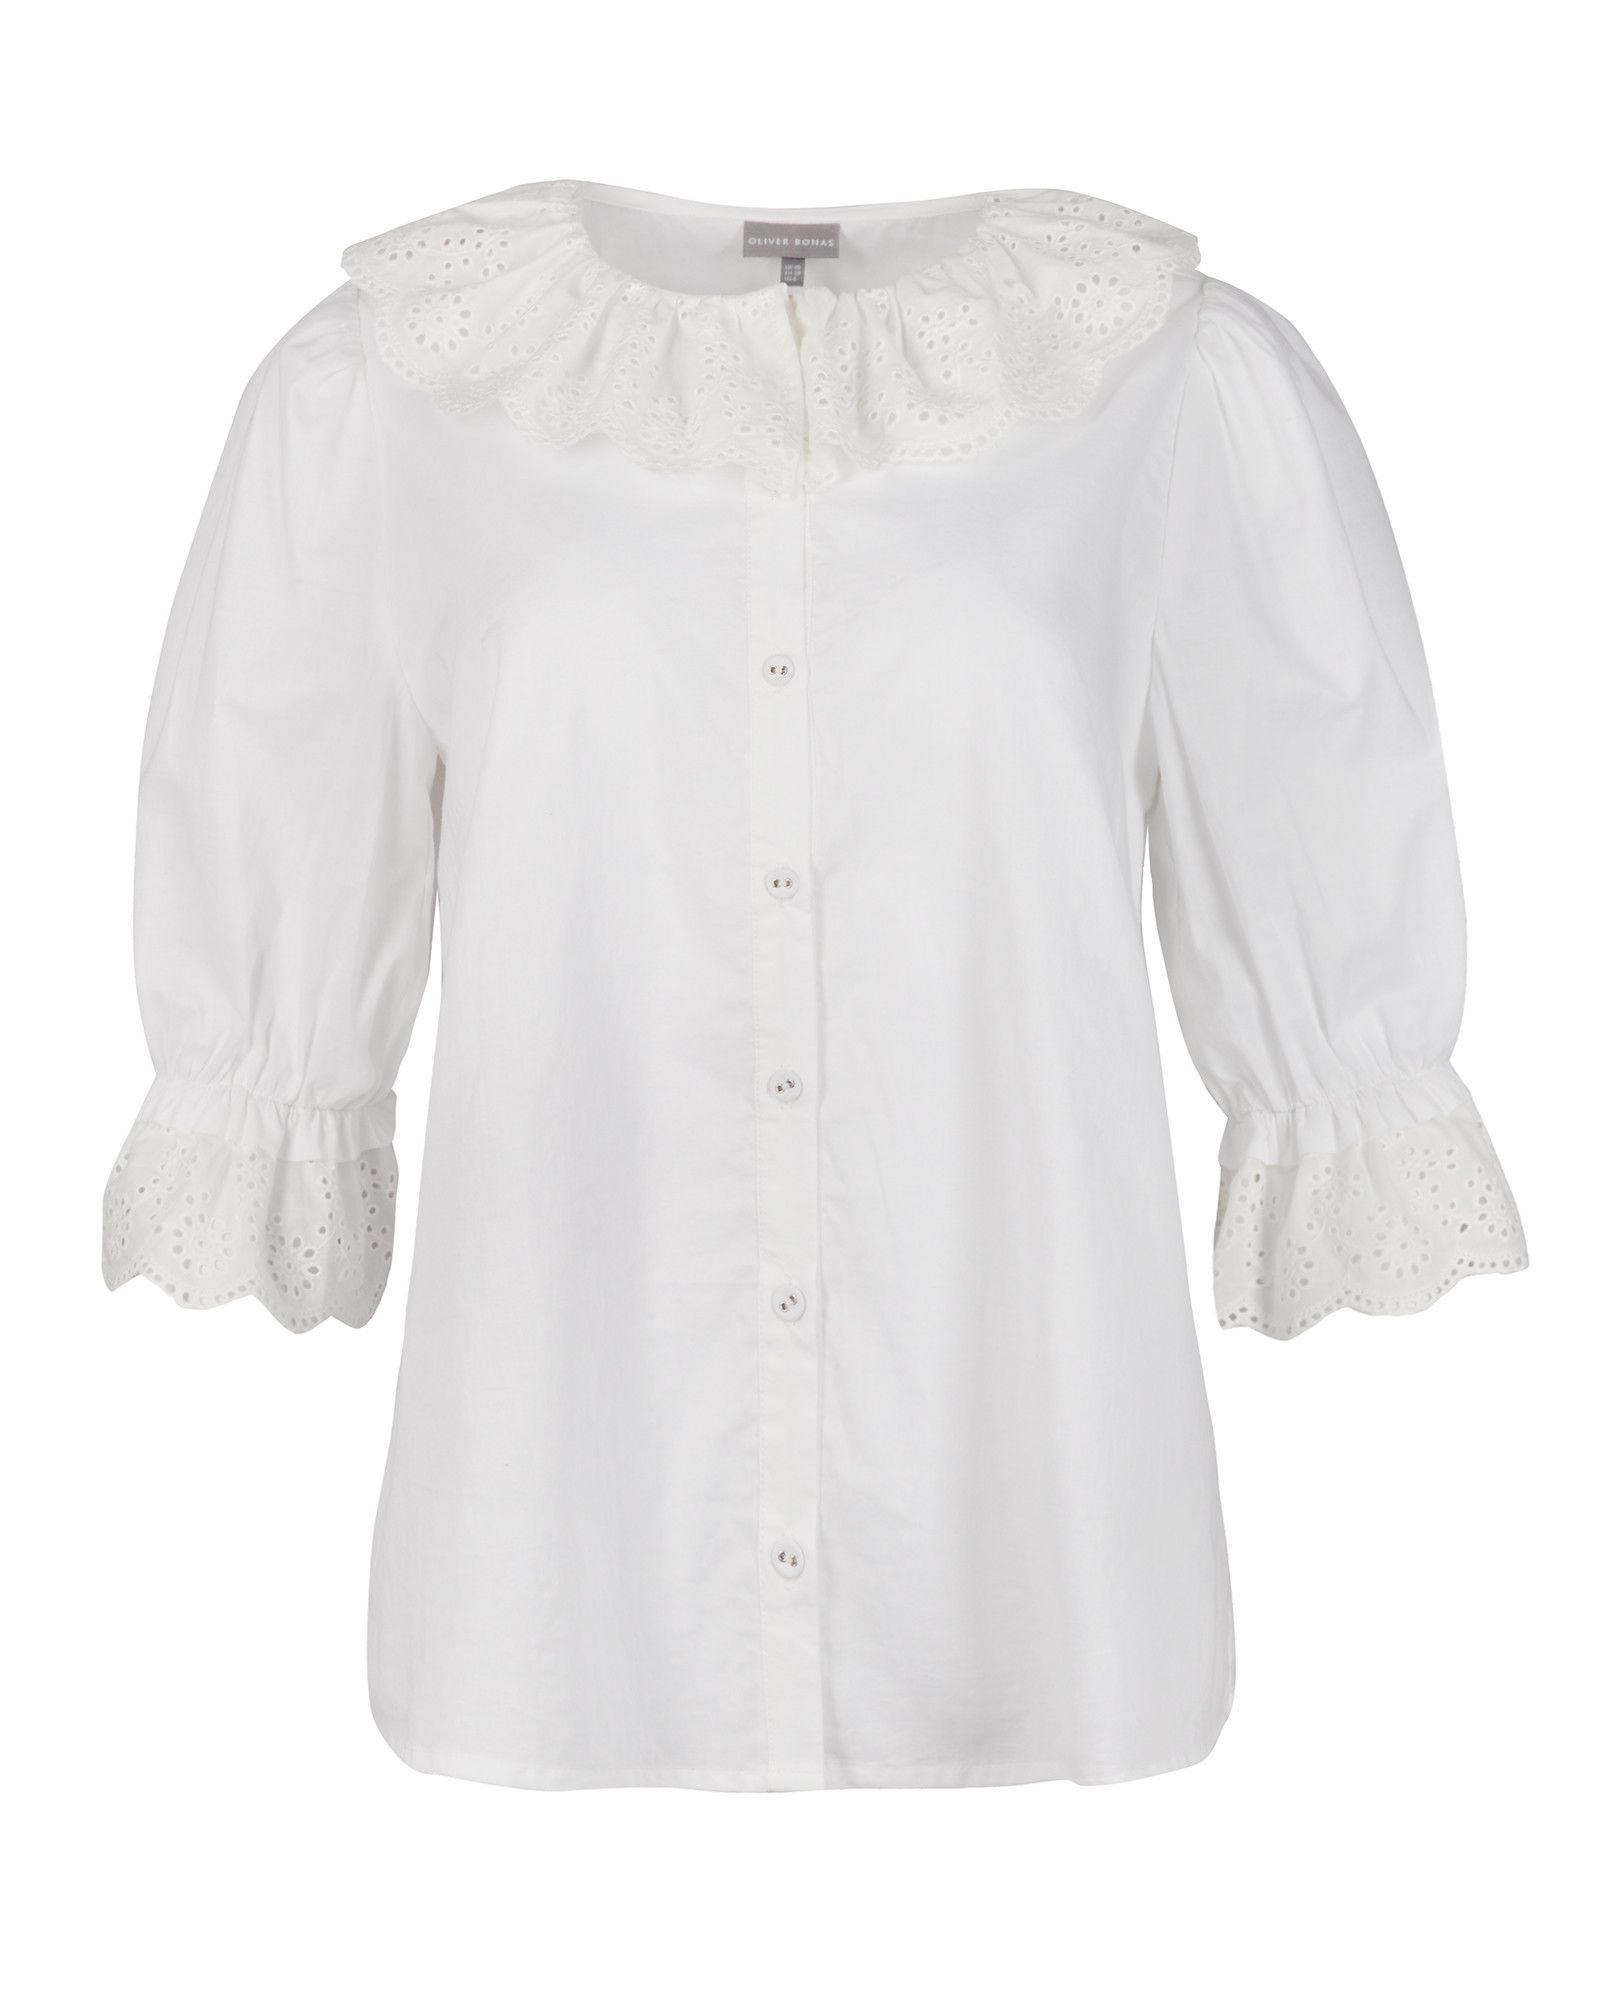 Broderie Collar & Cuff White Shirt | Oliver Bonas